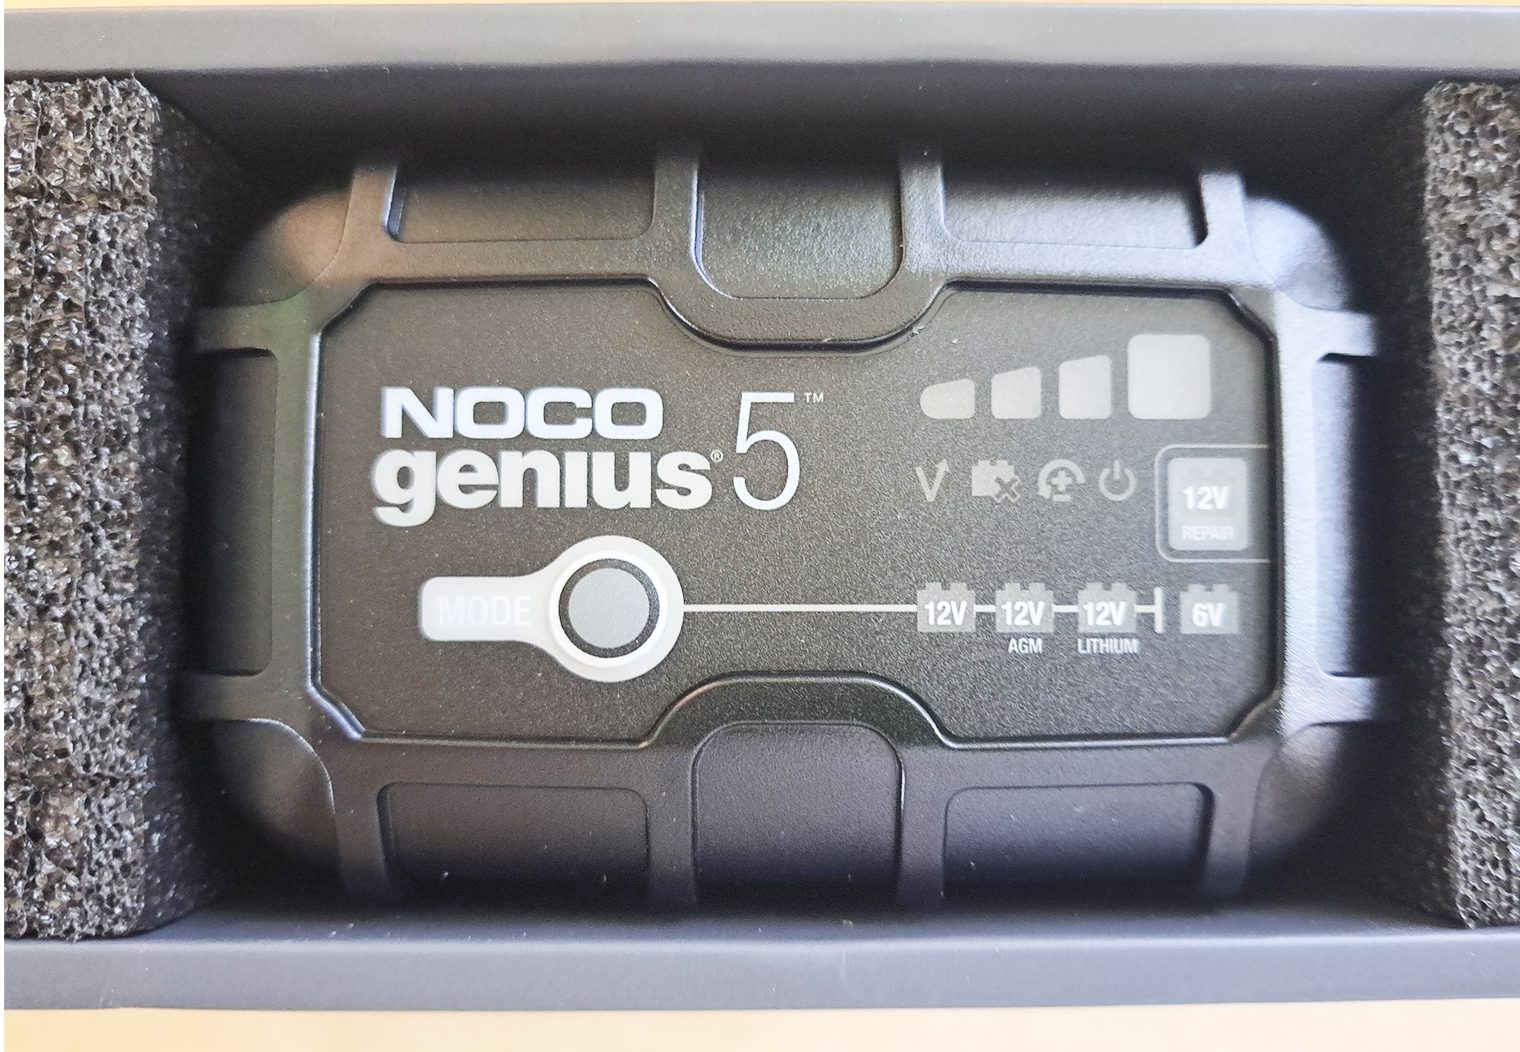 NOCO Genius5 closeup in box